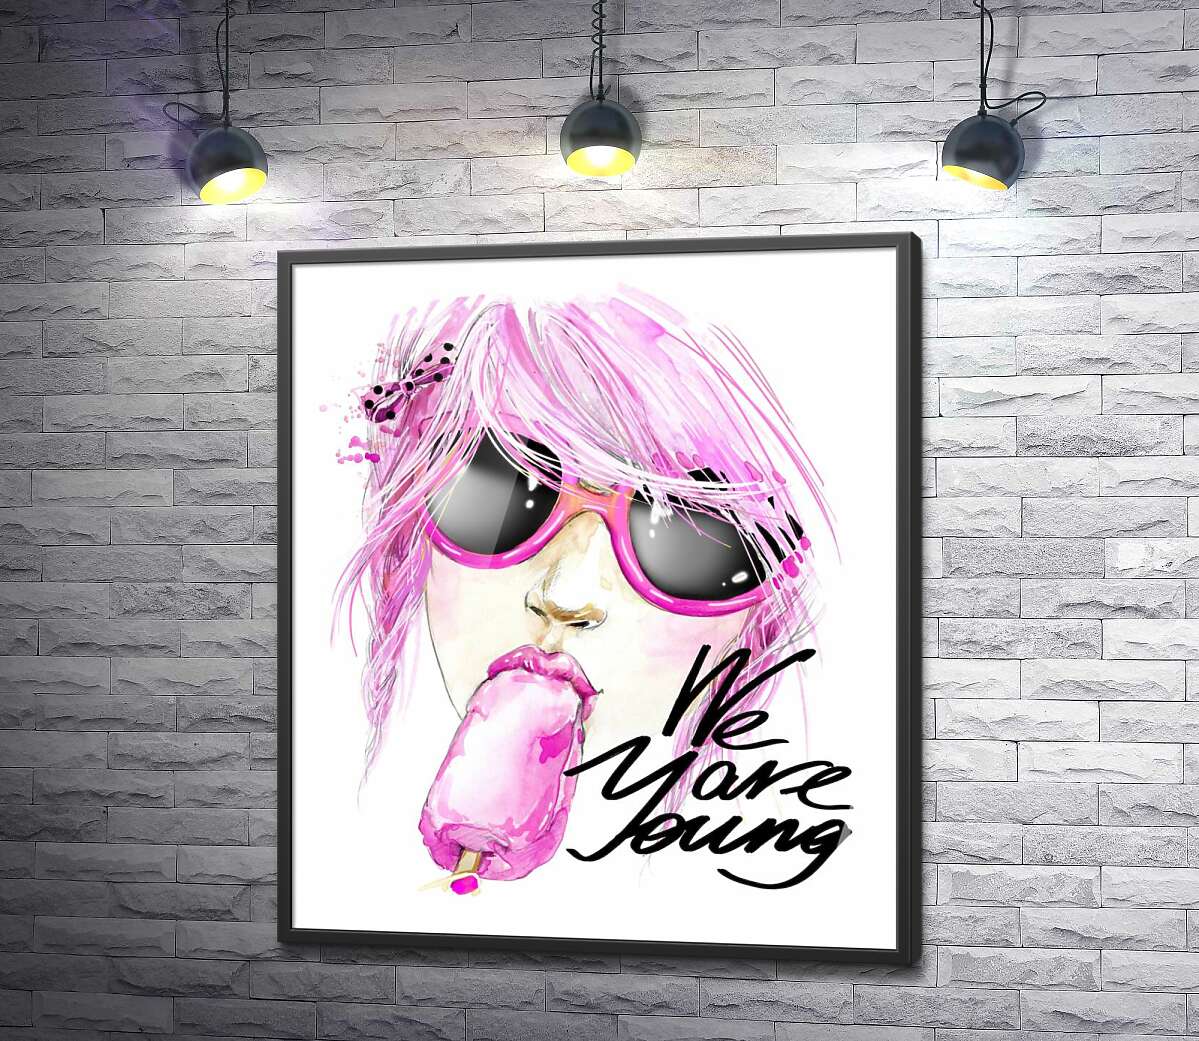 постер Дівчина з рожевим волоссям смакує морозиво поряд з написом "we are young"